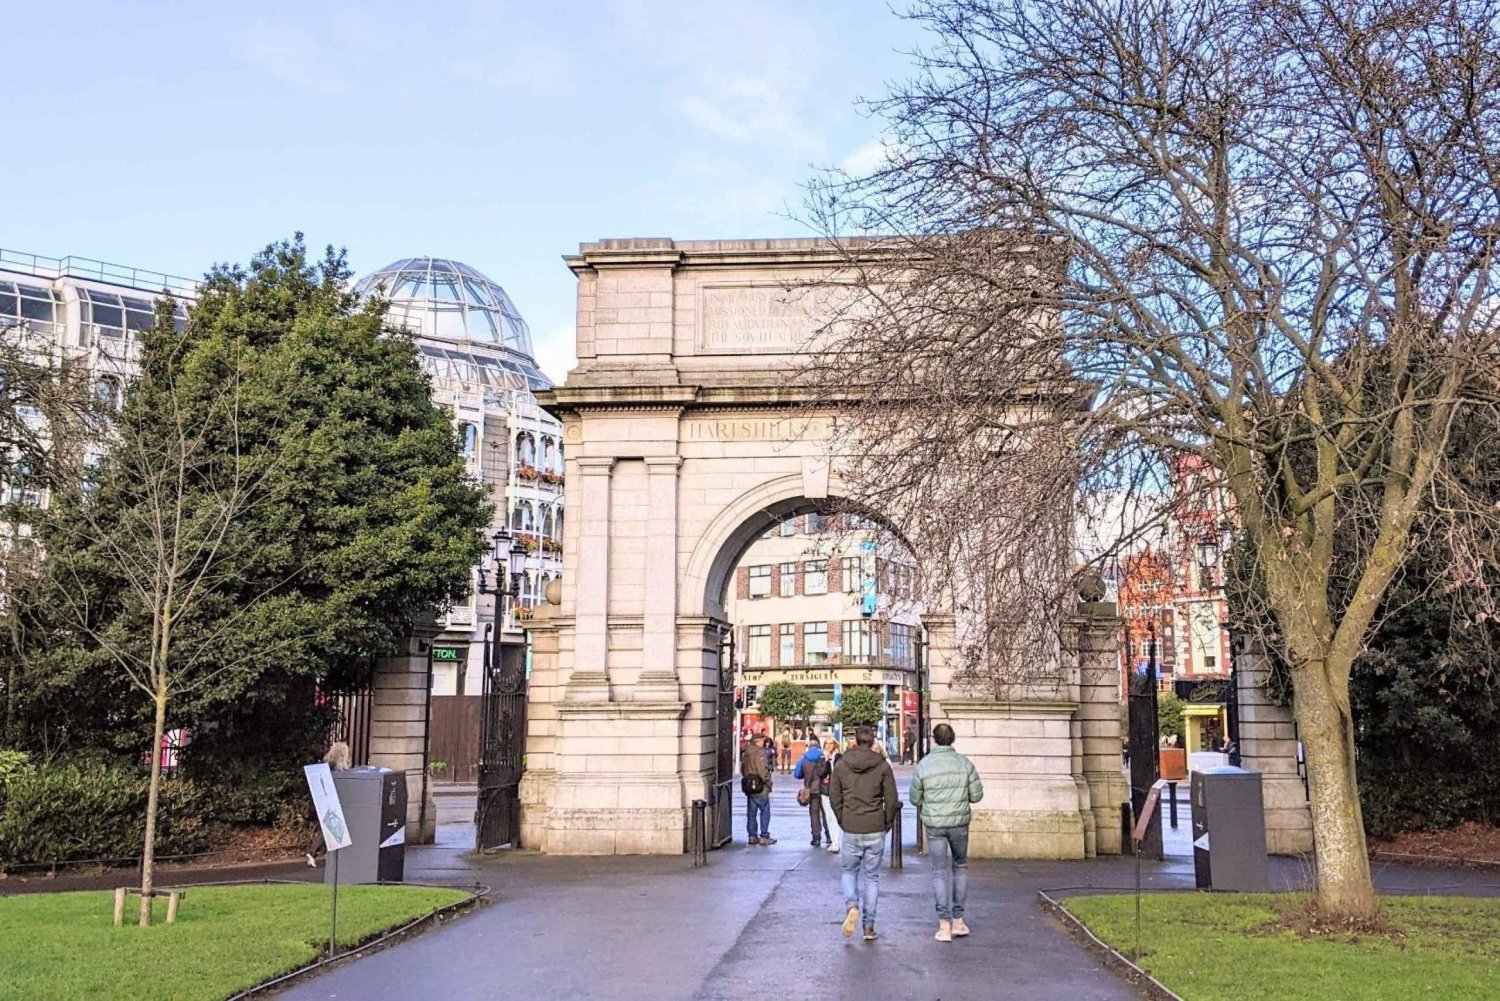 Dublin: Selvguidet gåtur i irsk historie i St. Stephens Green